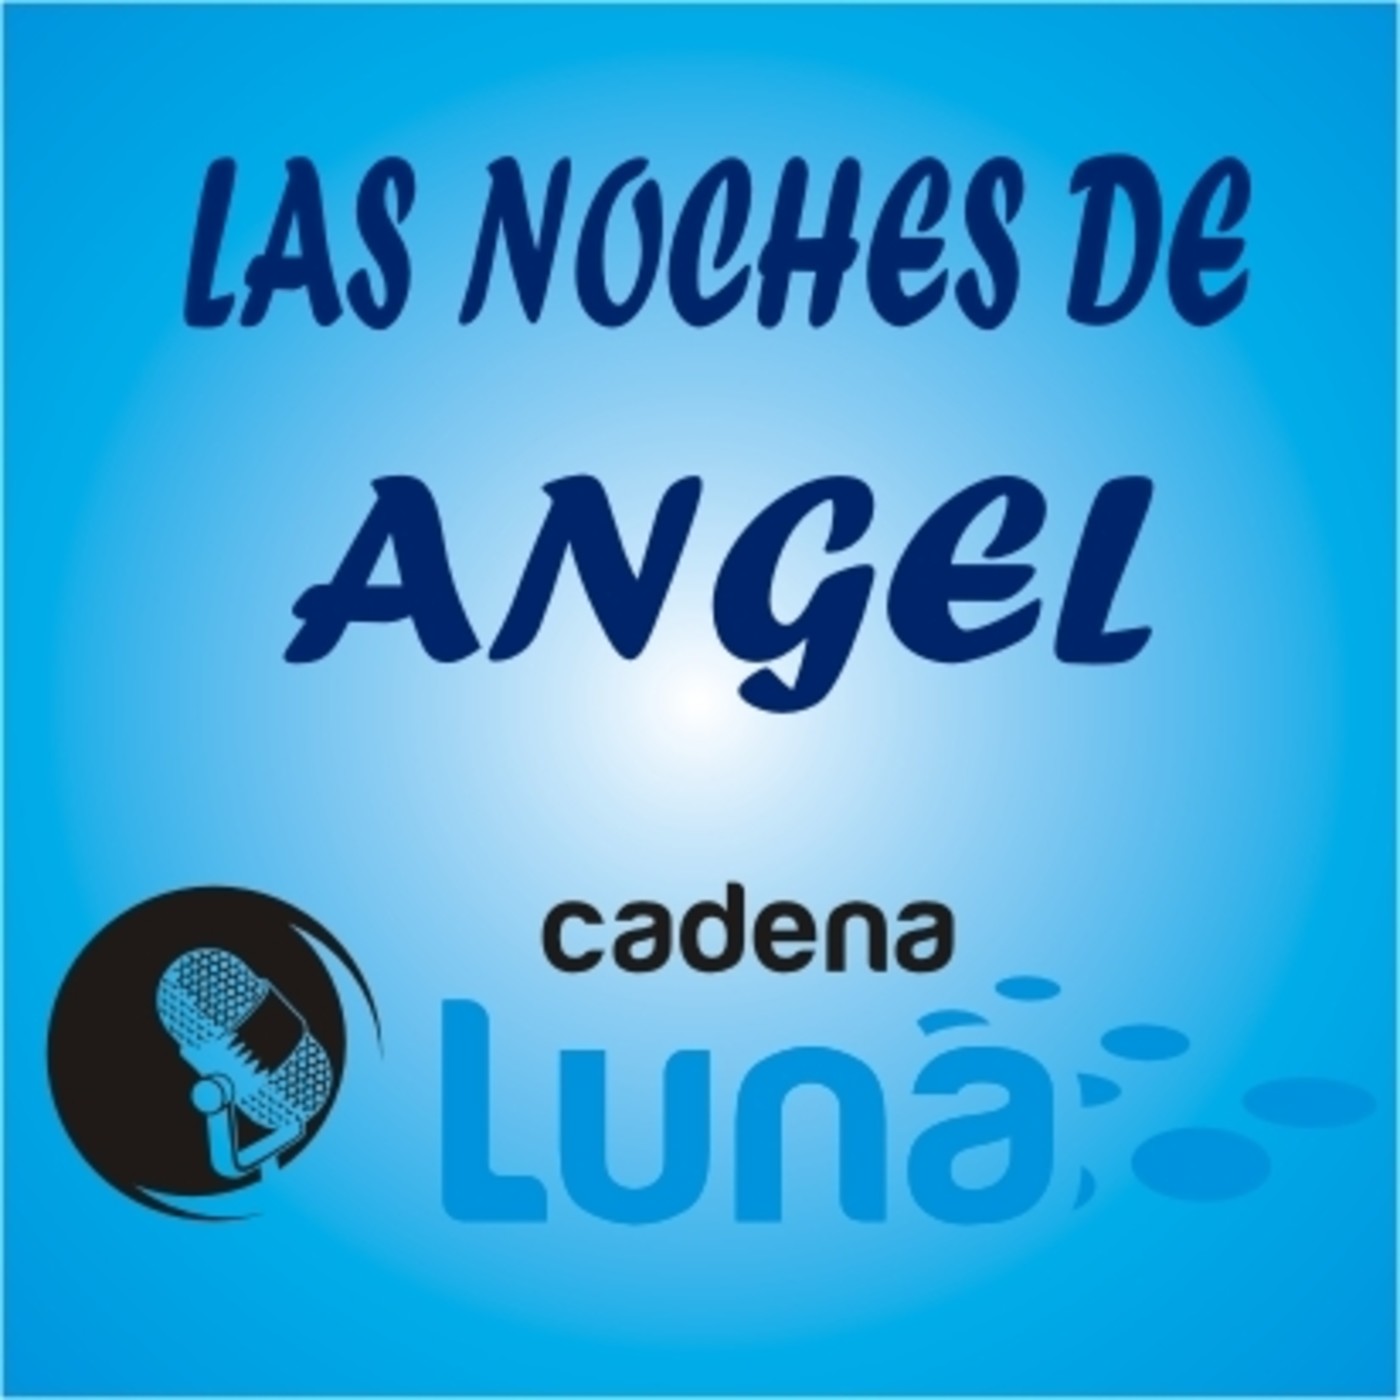 Las noches de Angel cadena luna - 03 - 05 - 24